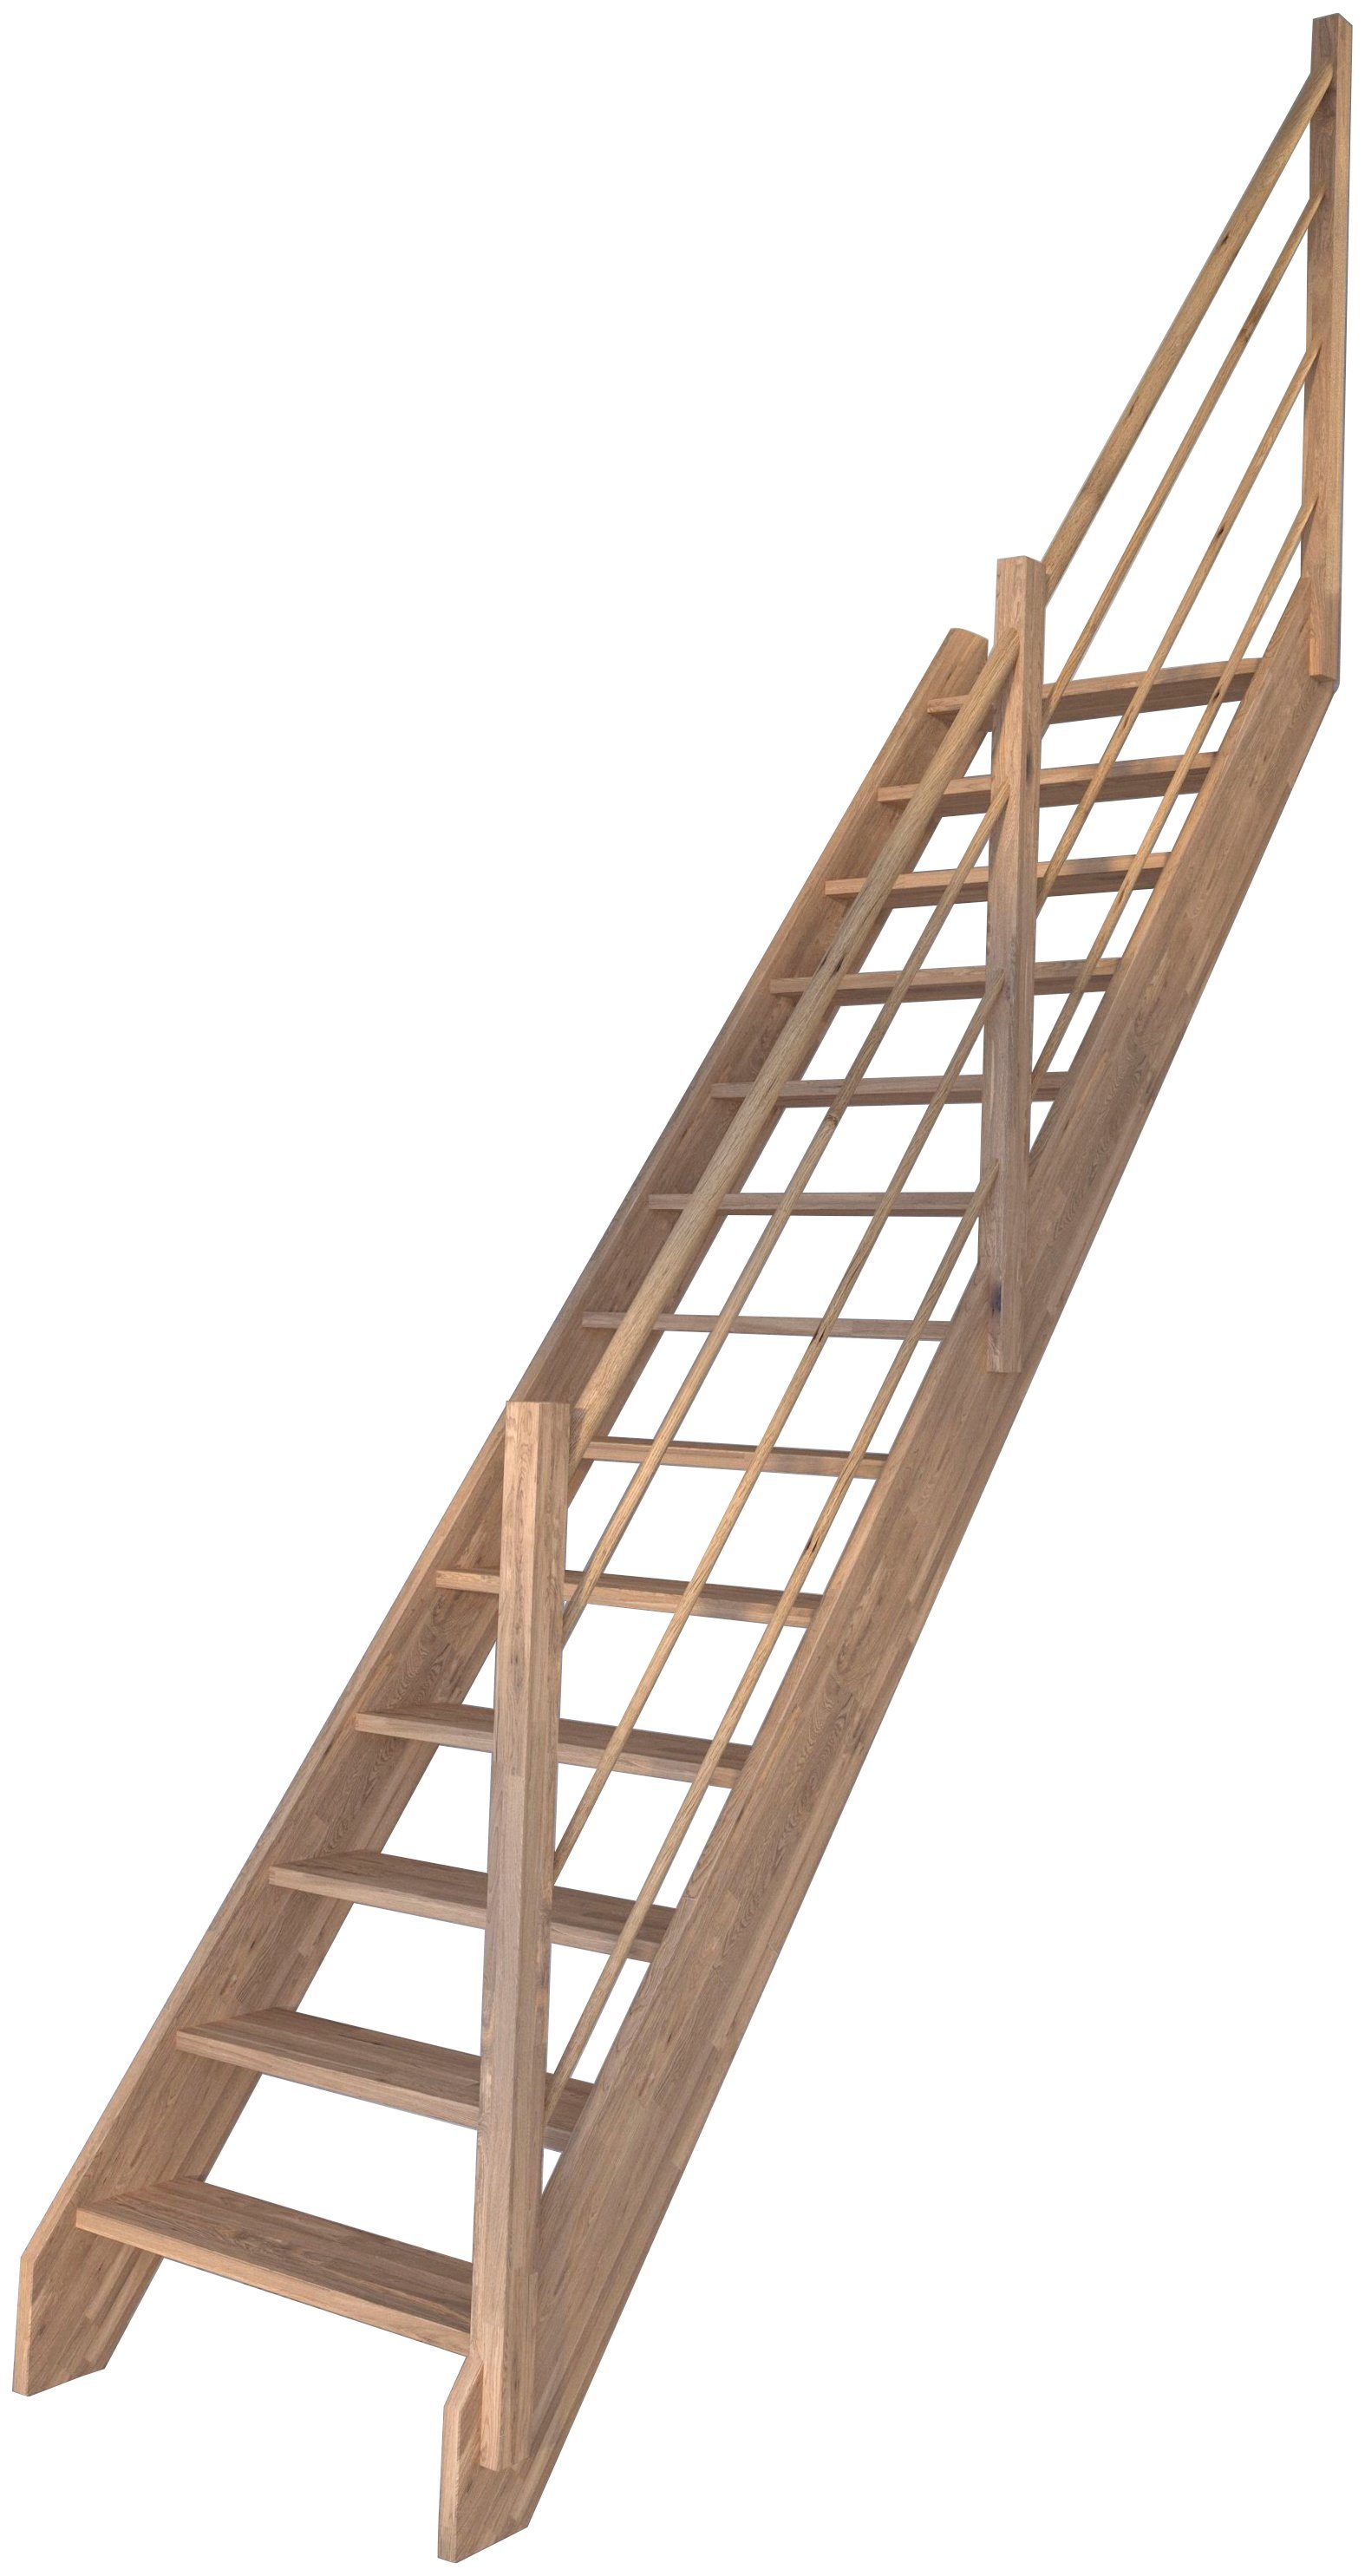 Holz-Holz Wangenteile für Massivholz bis cm, Stufen Geschosshöhen 300 Durchgehende offen, Raumspartreppe Rhodos, Geländer Rechts, Starwood Design